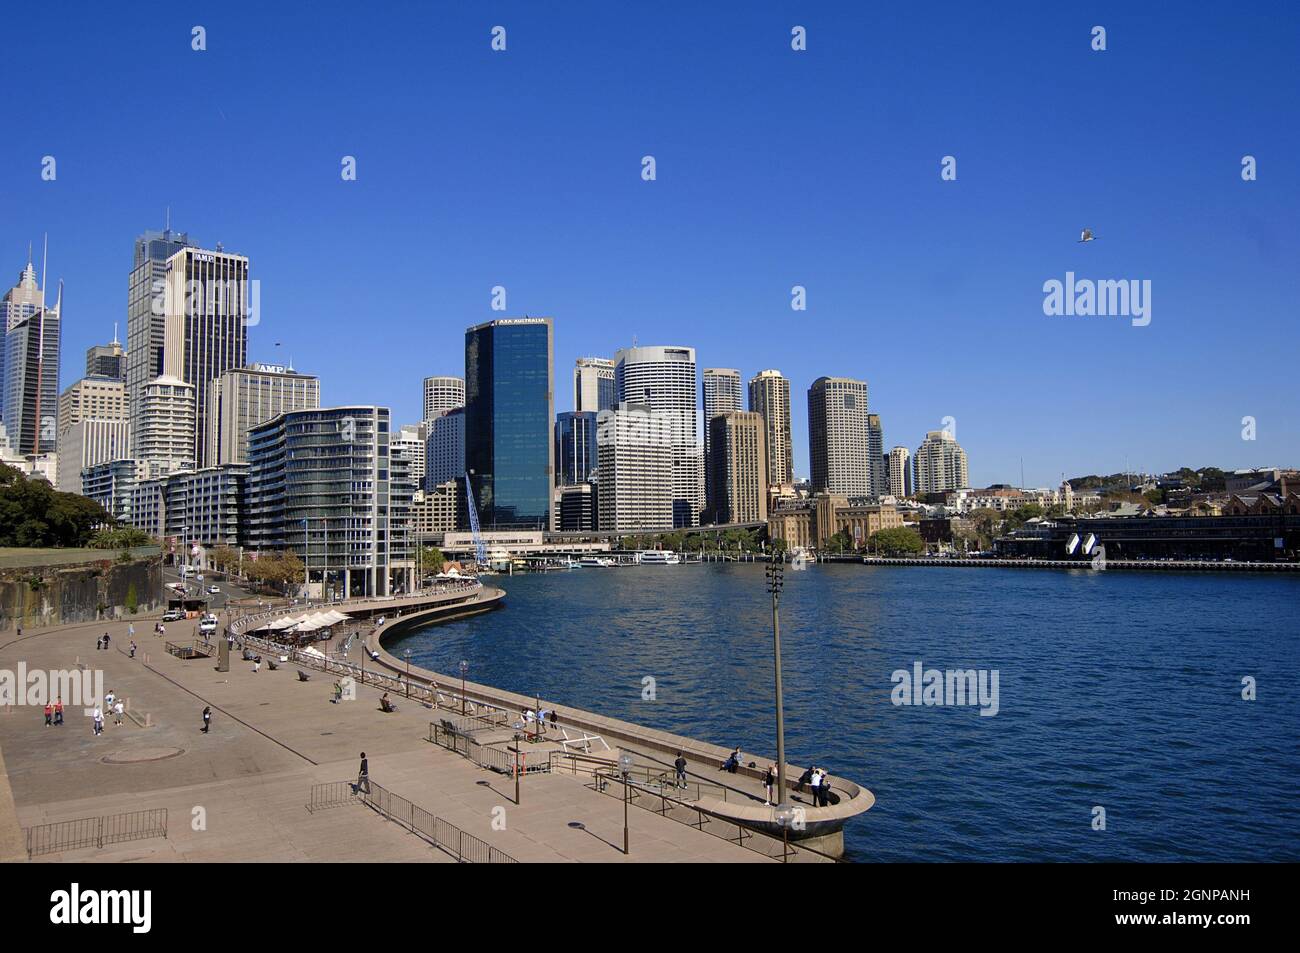 City scene of Sydney with harbour, Australia, Sydney Stock Photo